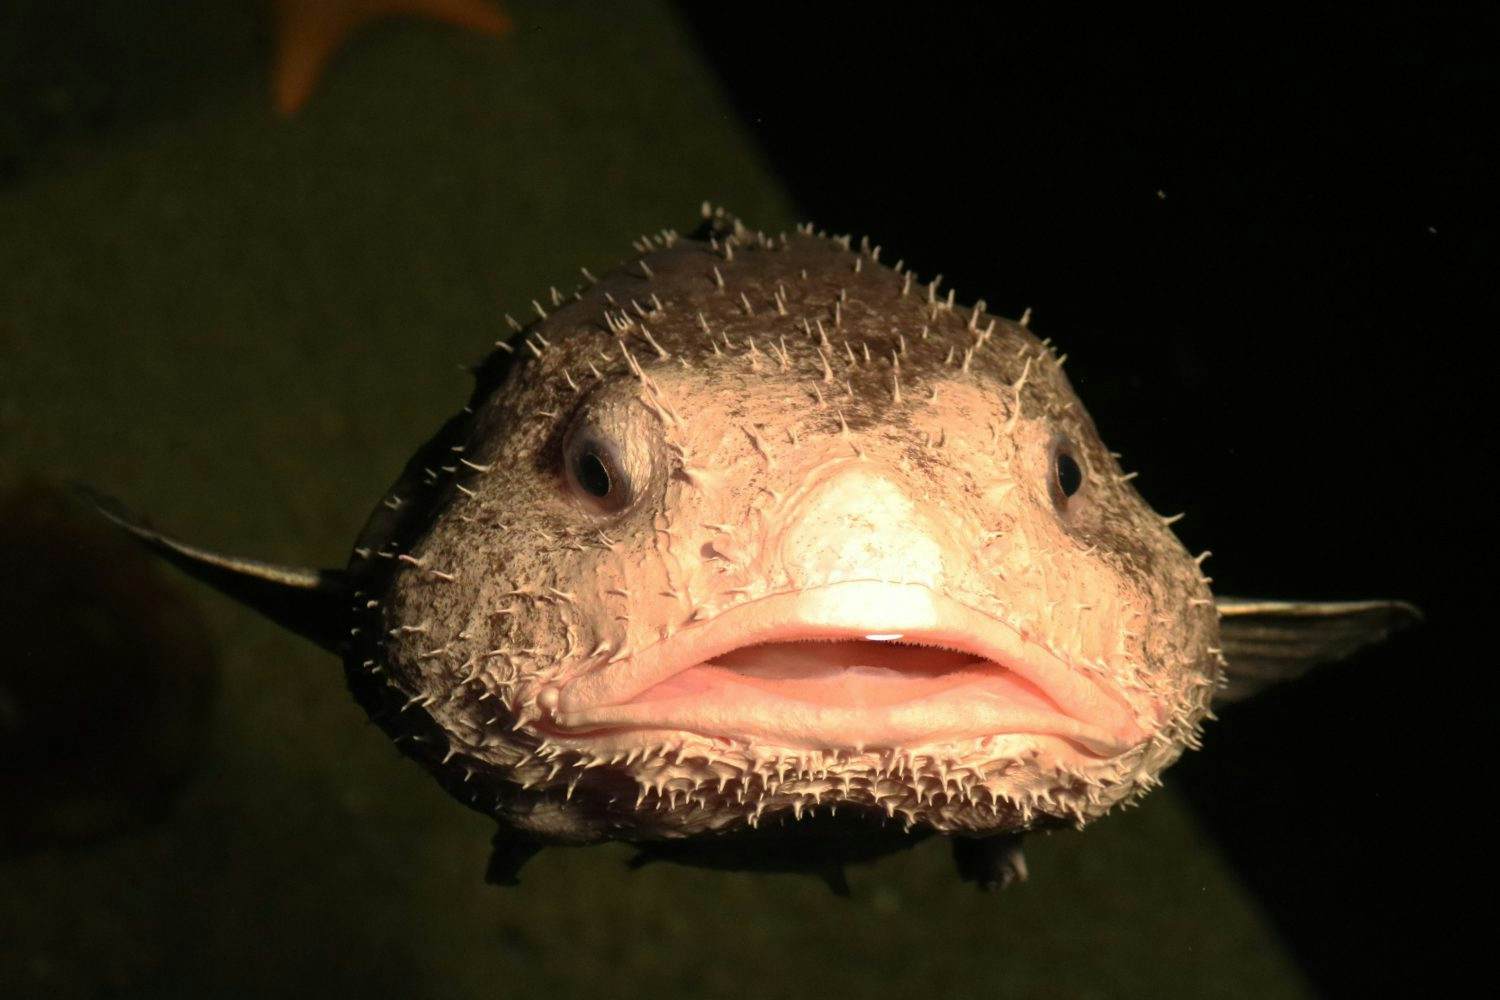 ugly blob fish